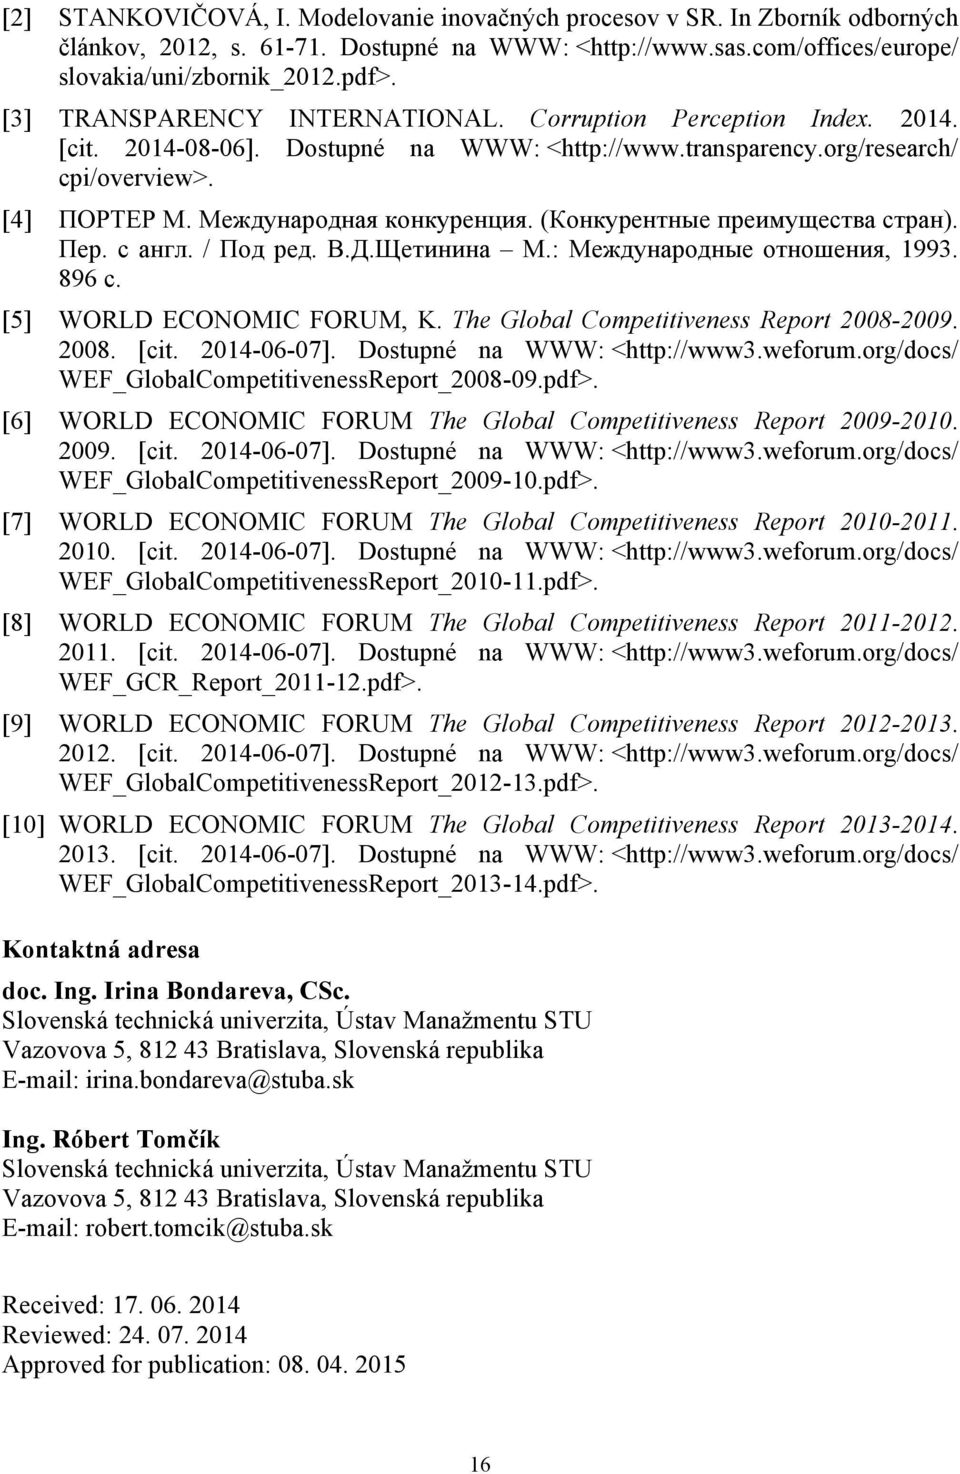 (Конкурентные преимущества стран). Пер. с англ. / Под ред. В.Д.Щетинина М.: Международные отношения, 1993. 896 с. [5] WORLD ECONOMIC FORUM, K. The Global Competitivene Report 2008-2009. 2008. [cit.